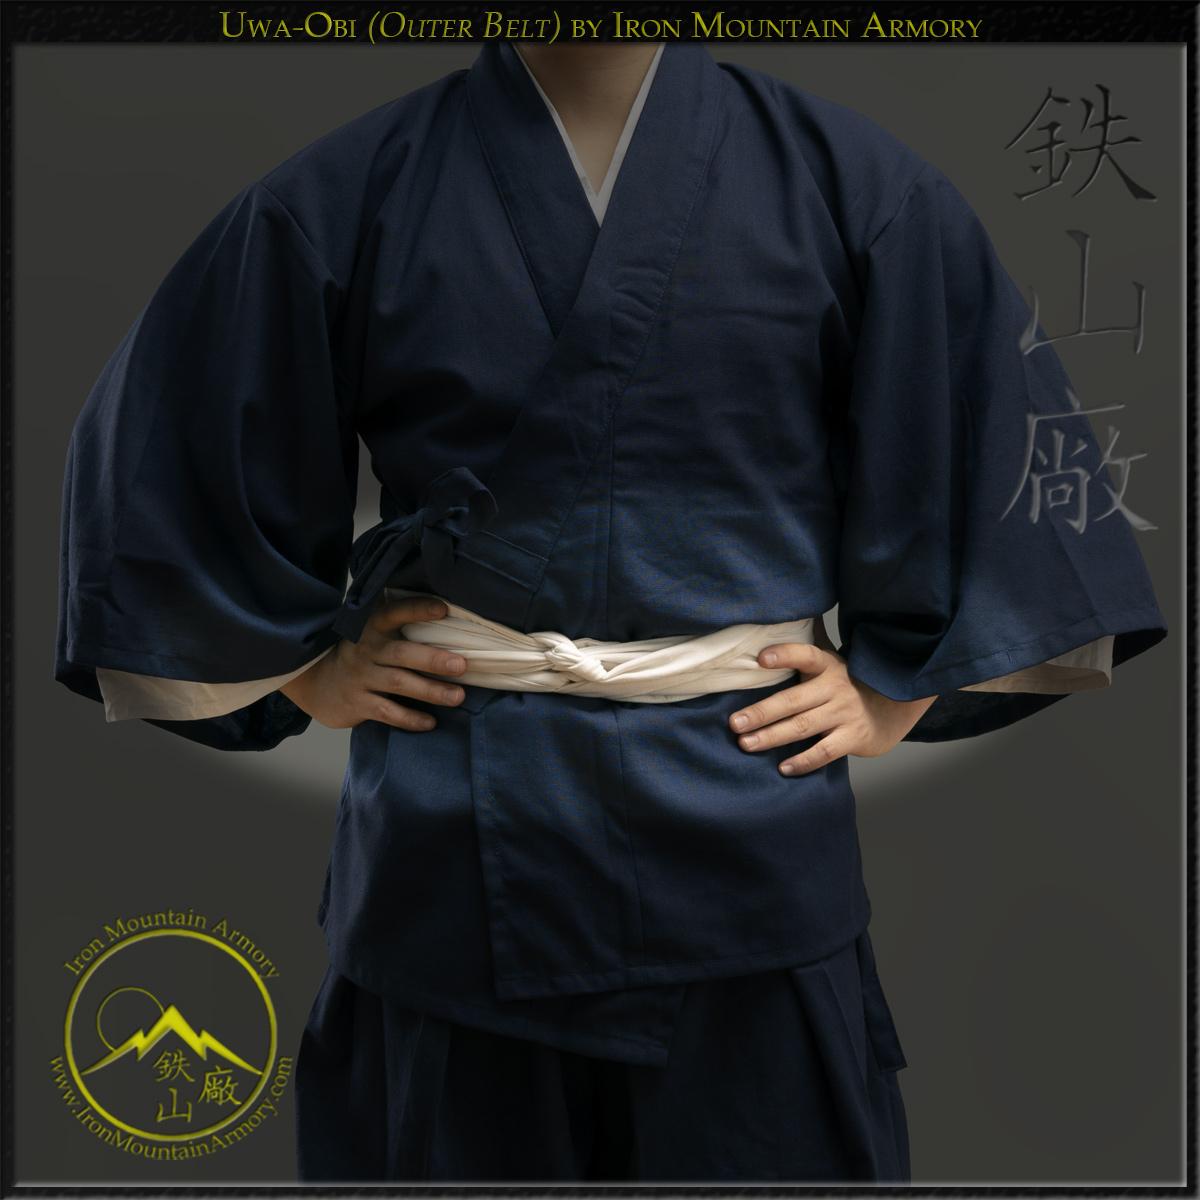 Uwa-Obi: Uwa Obi samura weapon belt or sash for holding katana or tahci